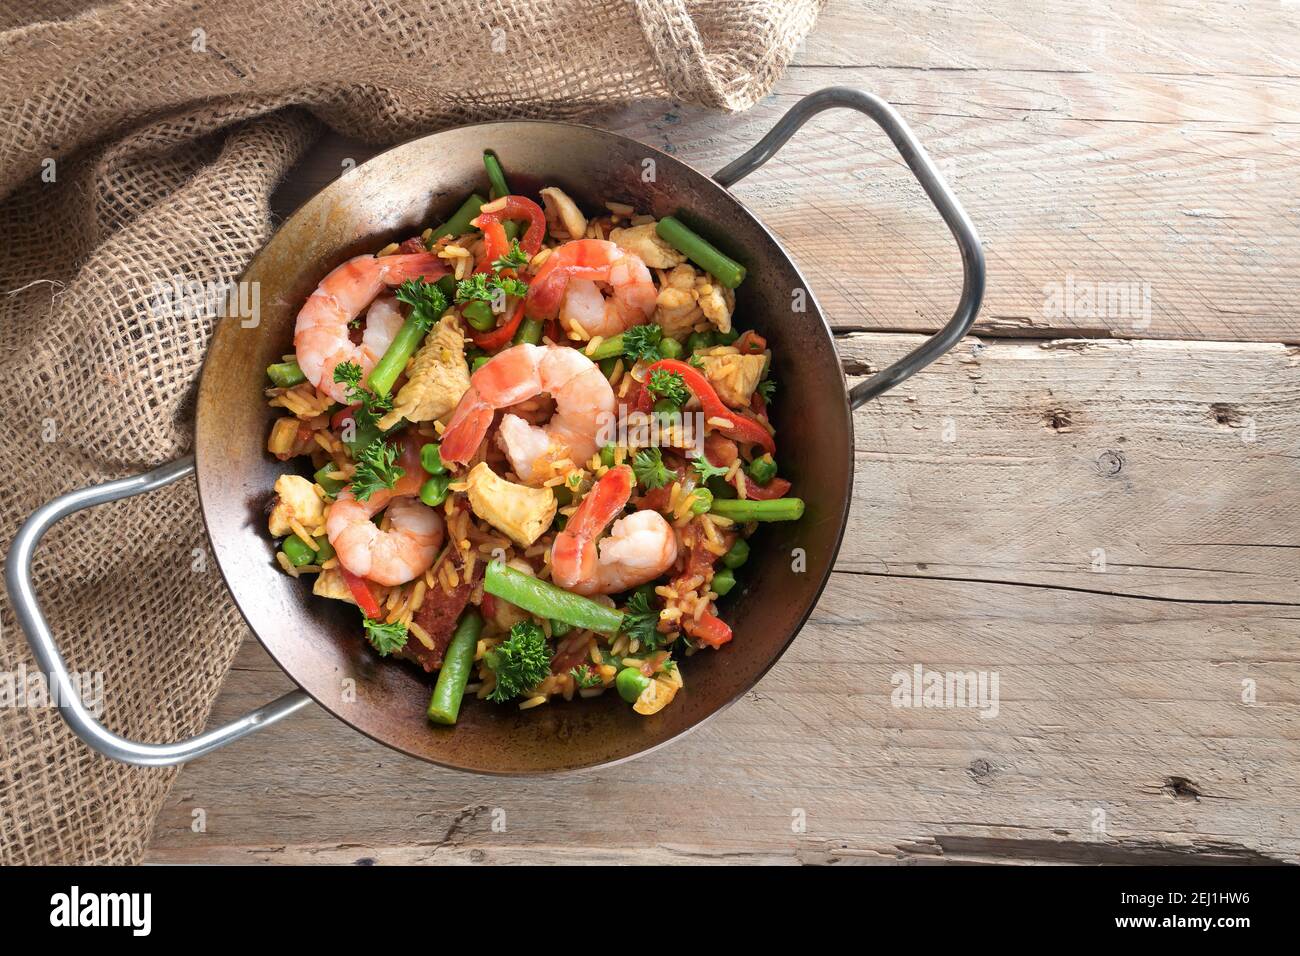 Piatto di riso fatto in casa con frutti di mare, pollo e verdure in una paella paella su tavole rustiche in legno, spazio copia, vista dall'alto dell'angelo Foto Stock